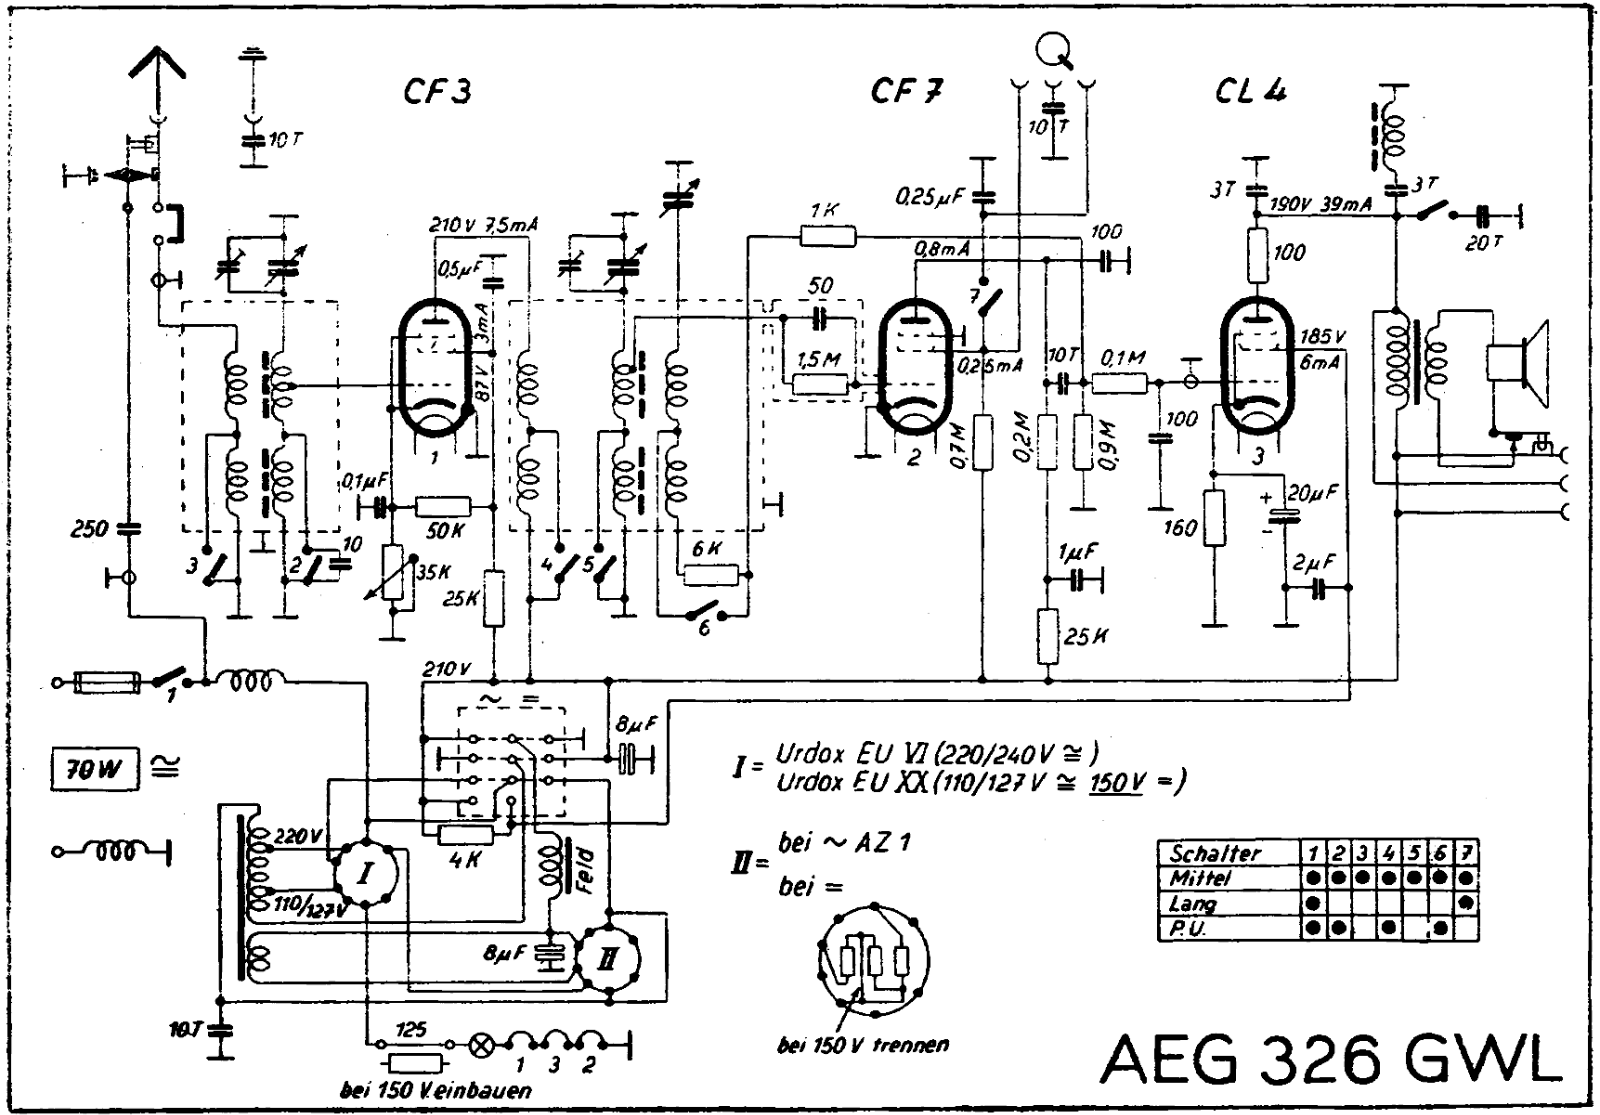 AEG 326gw schematic